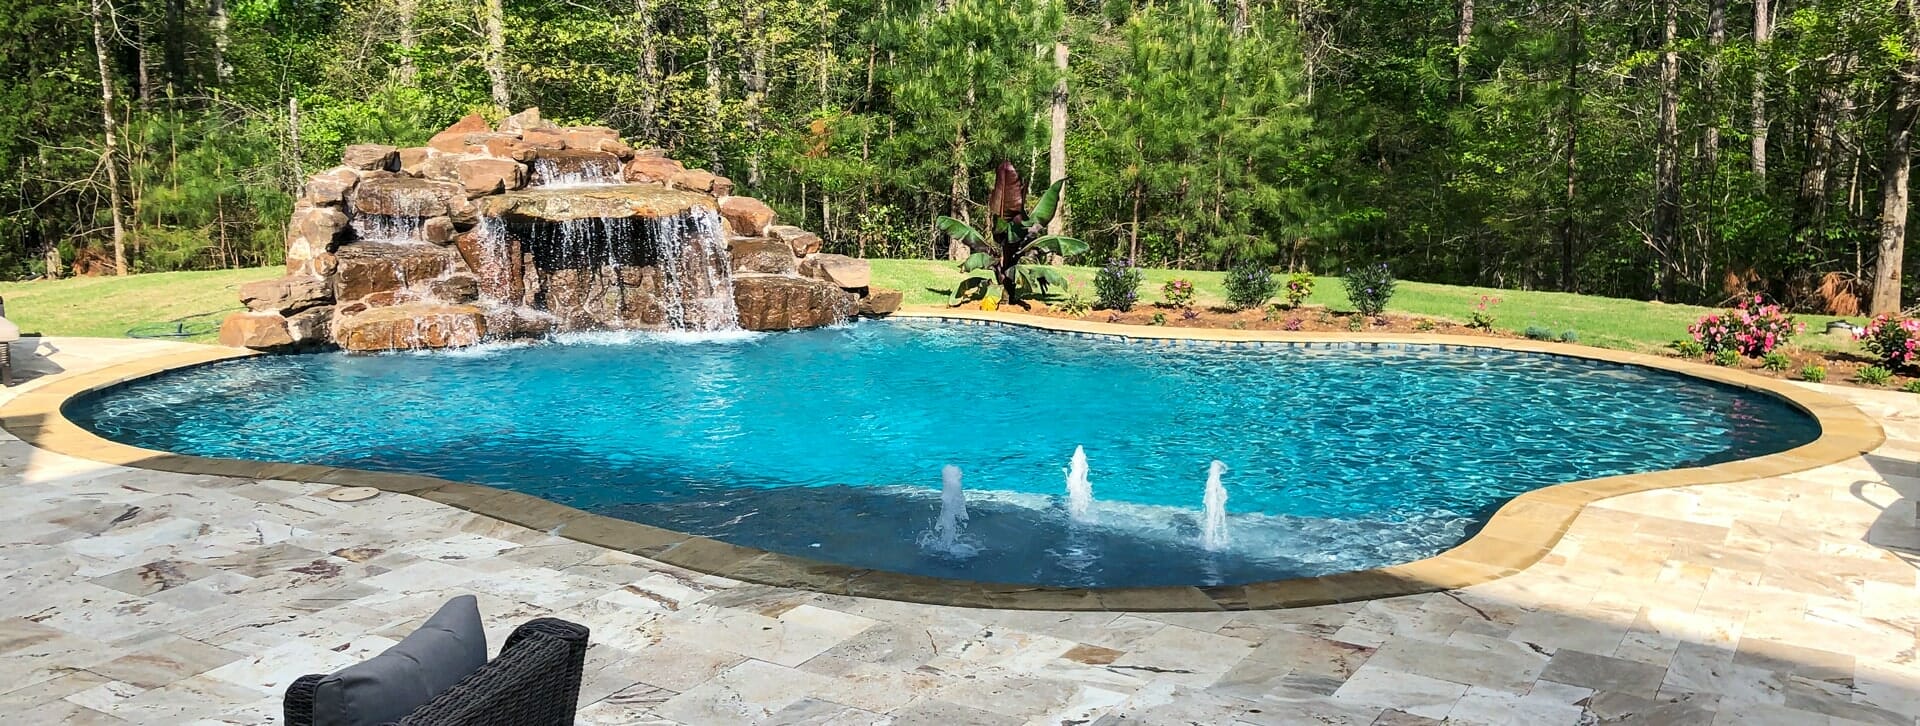 jackson inground pool